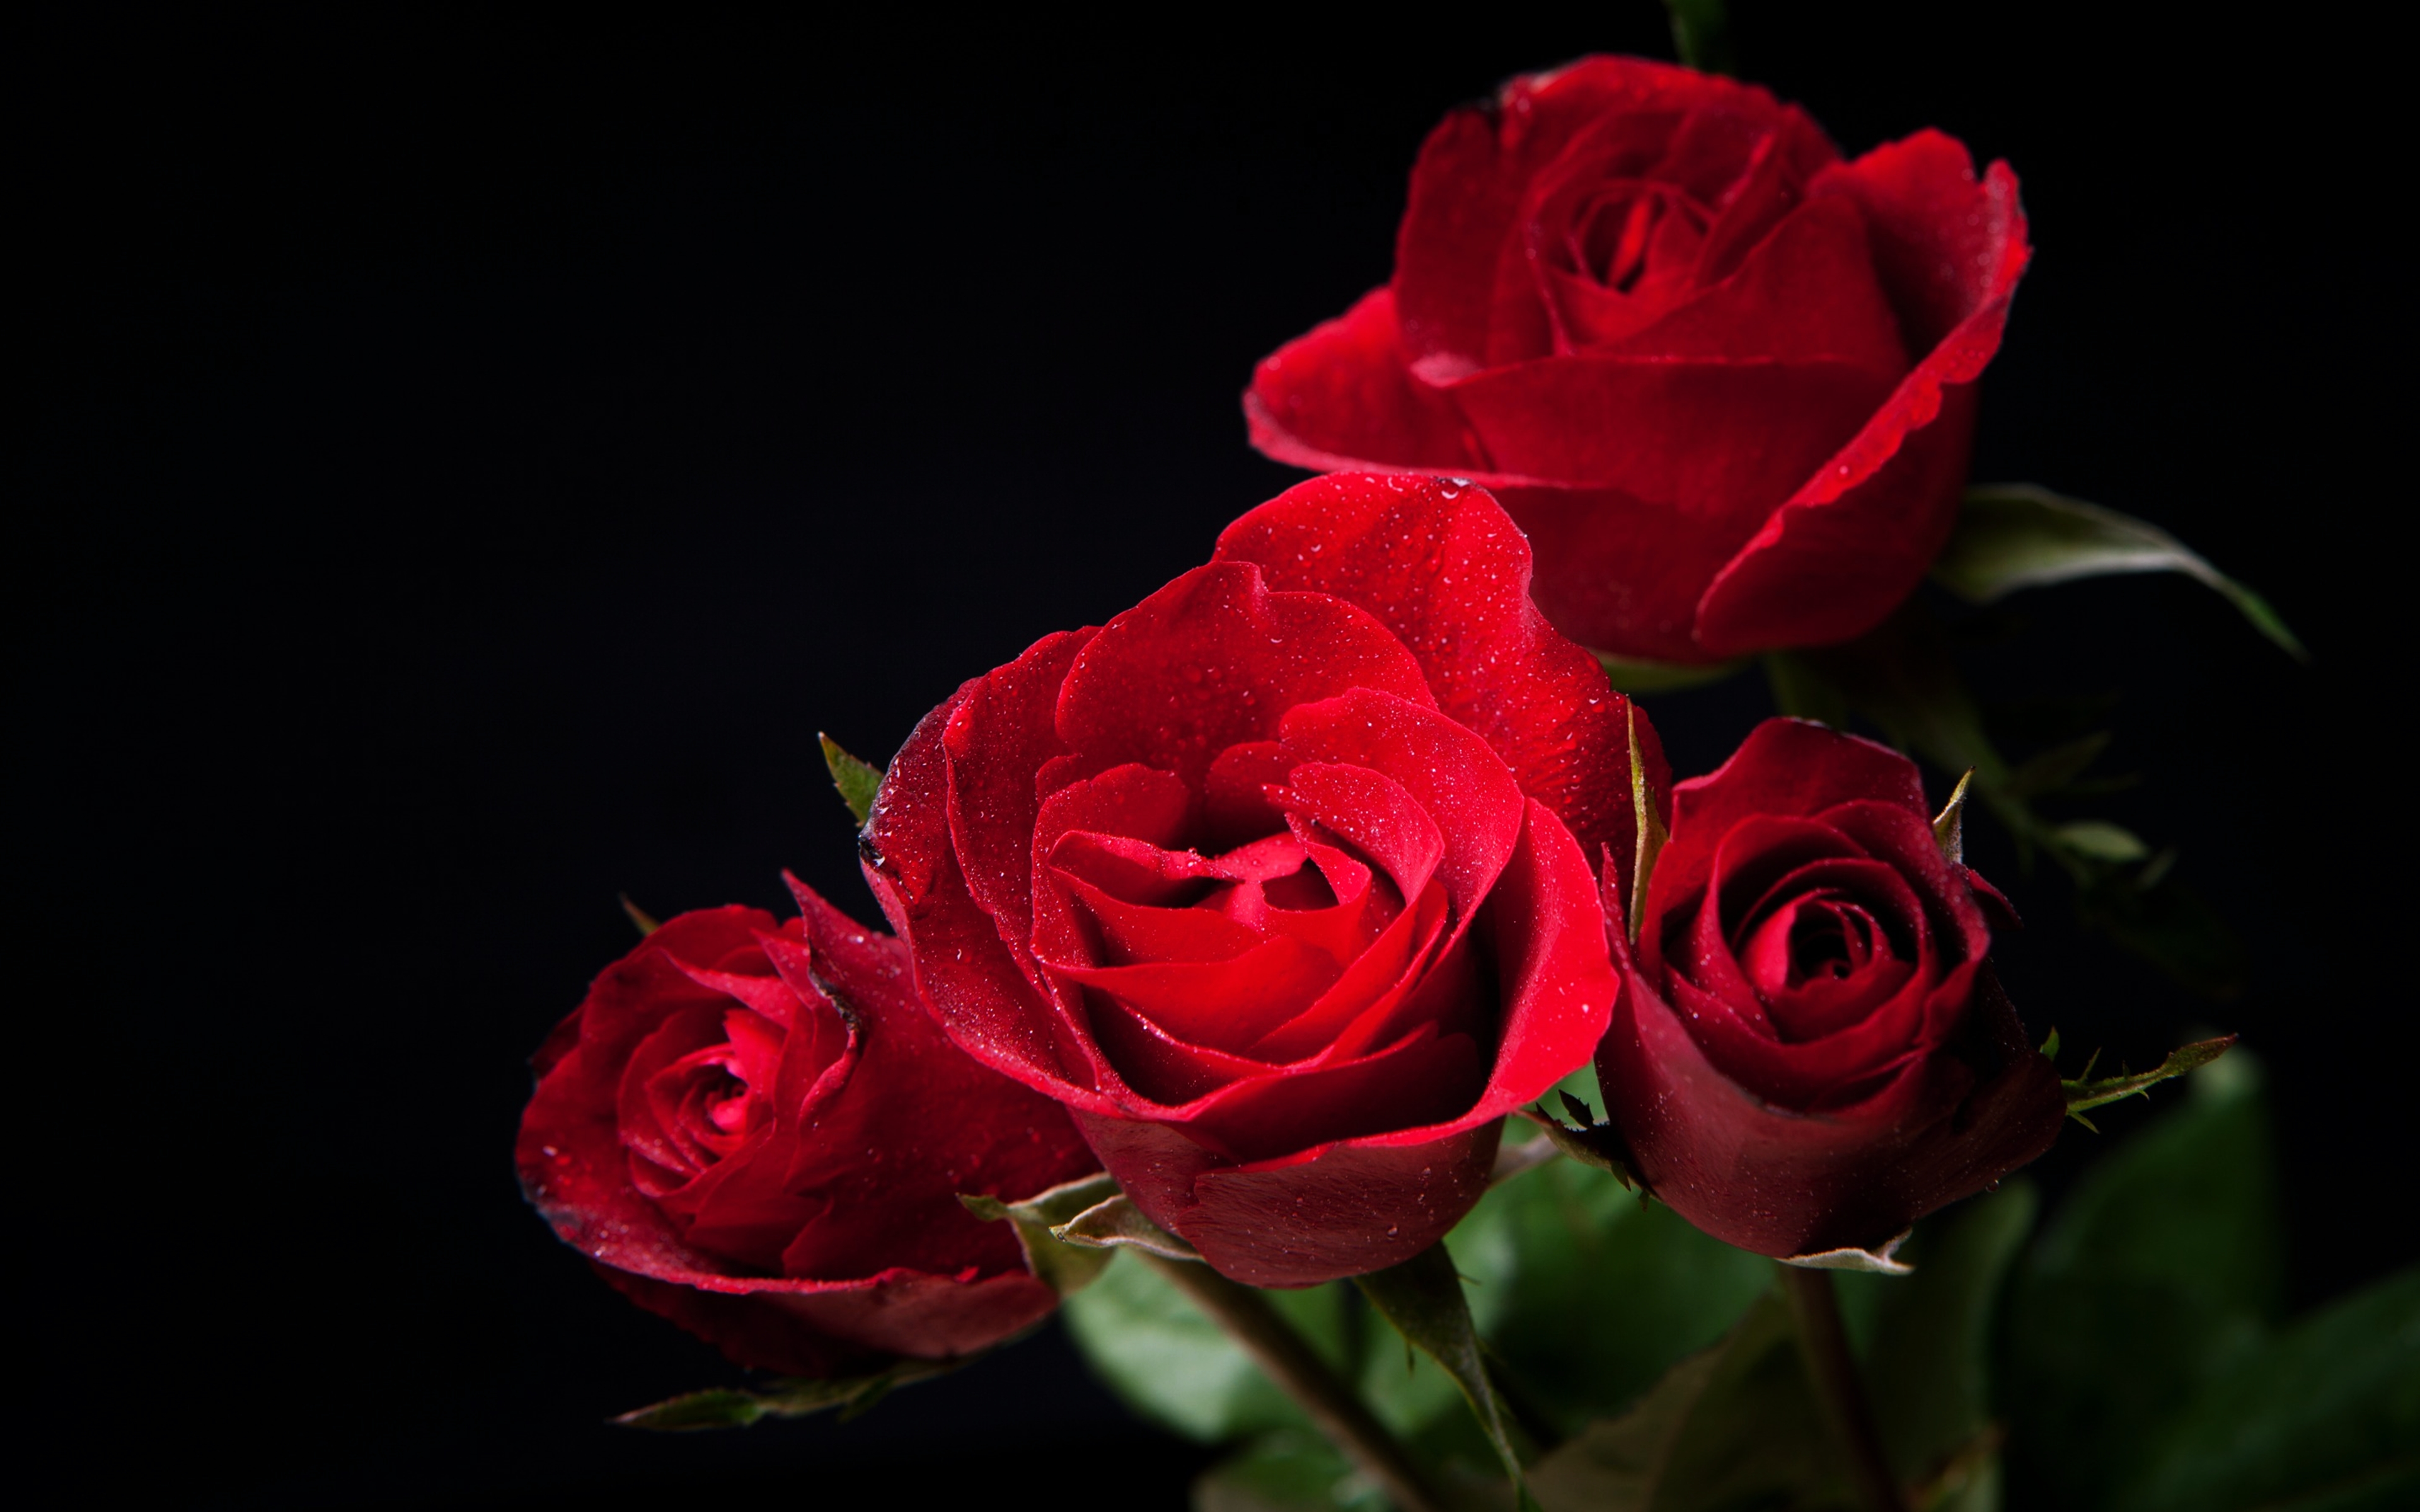 357719 免費下載壁紙 自然, 玫瑰, 花, 红花, 红玫瑰, 花卉 屏保和圖片